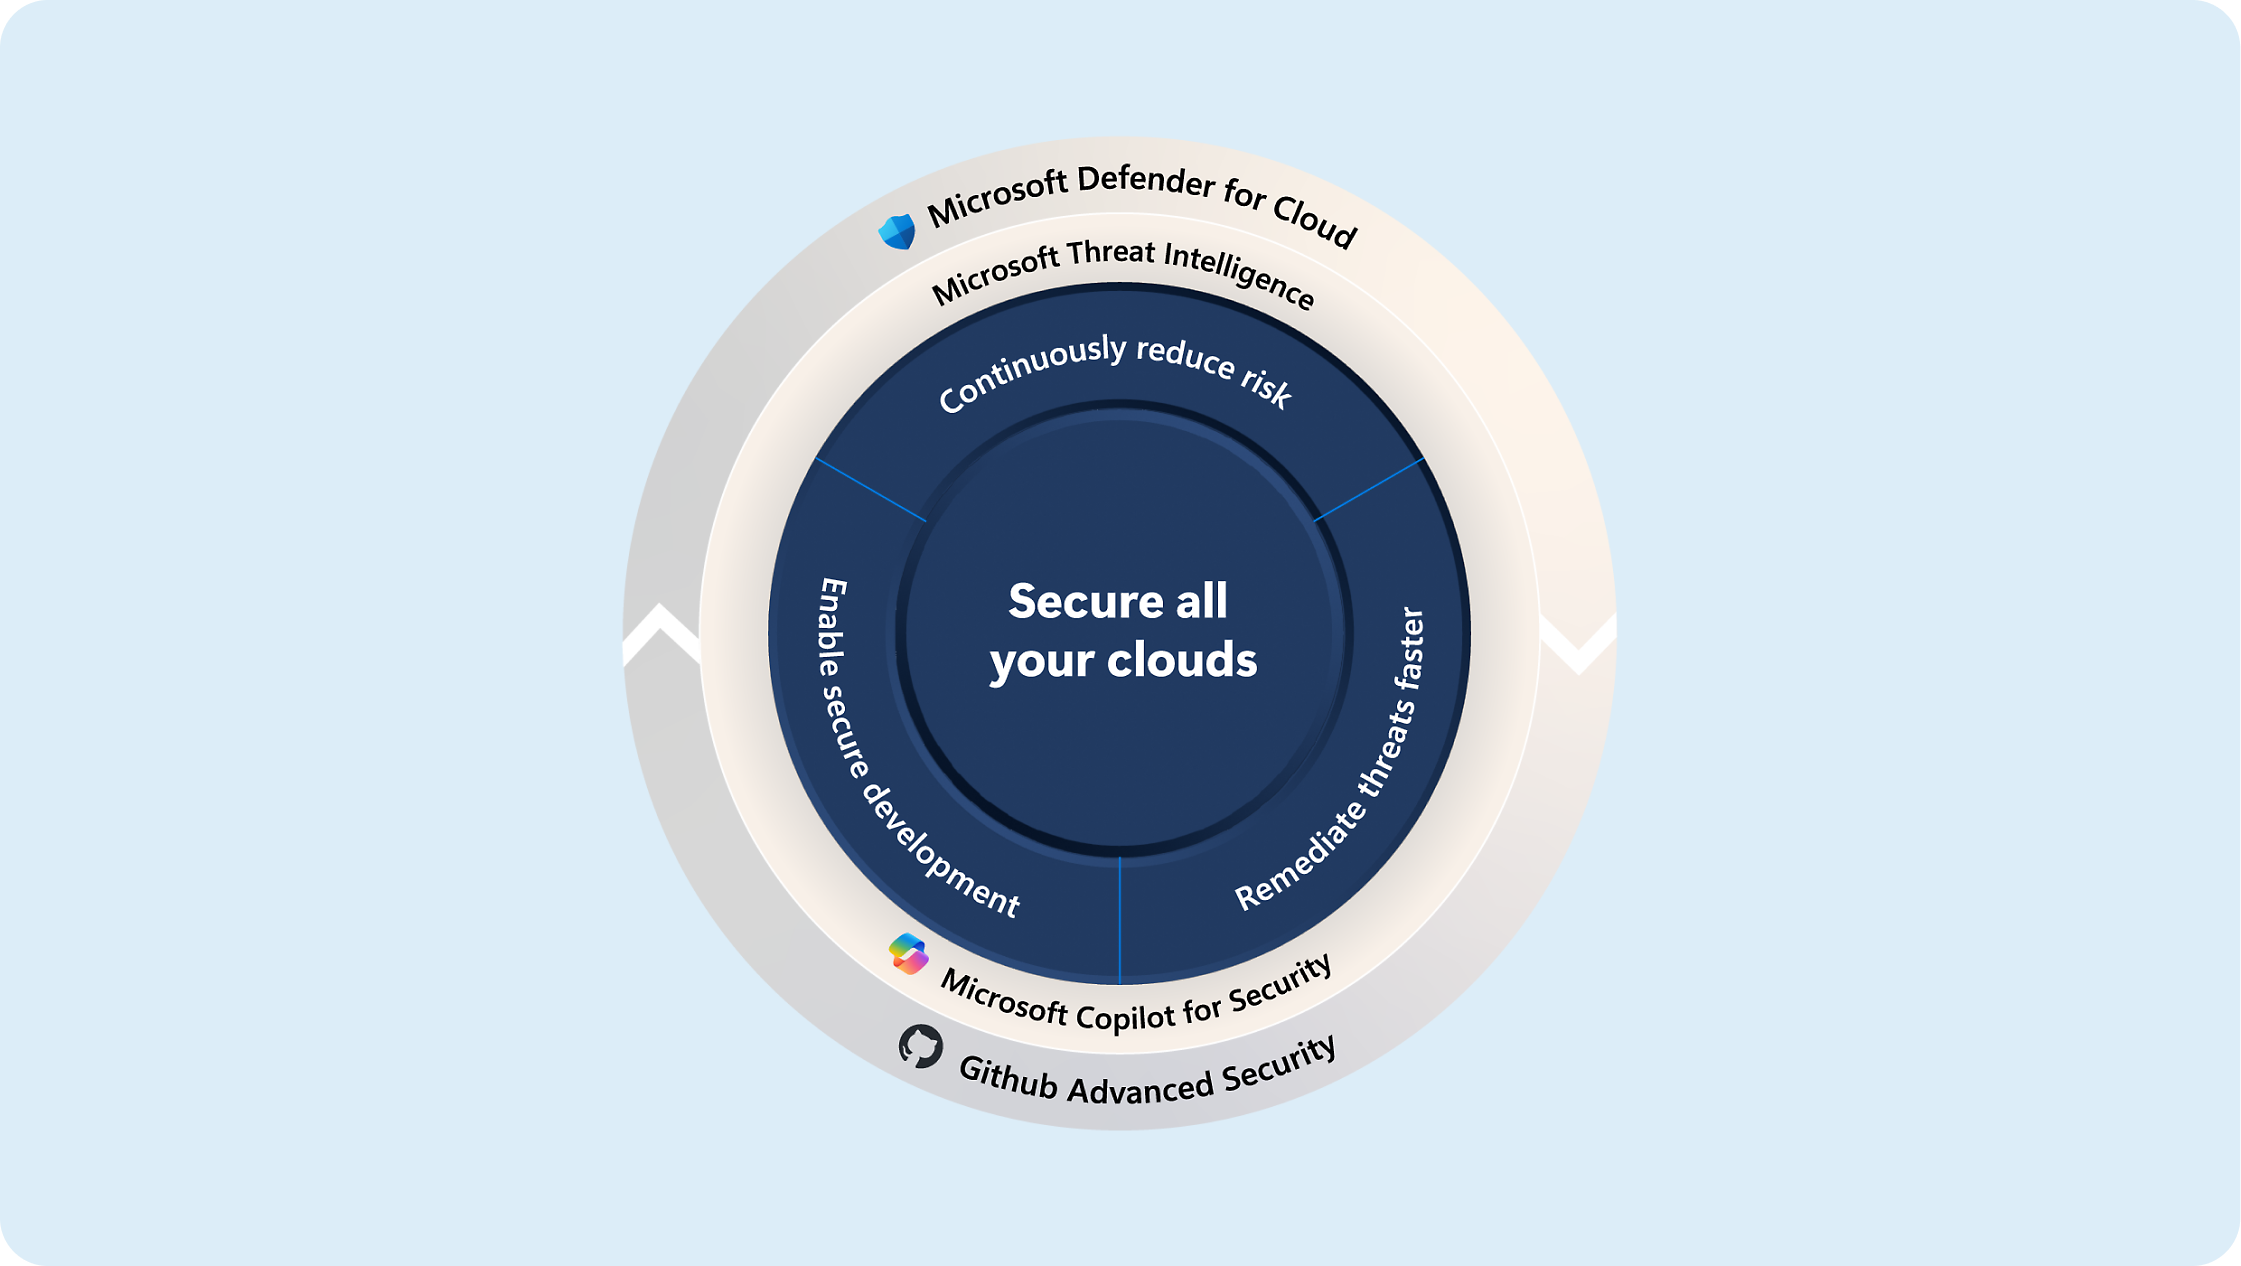 Diagrama donde se muestran estrategias para proteger nubes con Microsoft Defender, Inteligencia sobre amenazas y Copilot para seguridad.